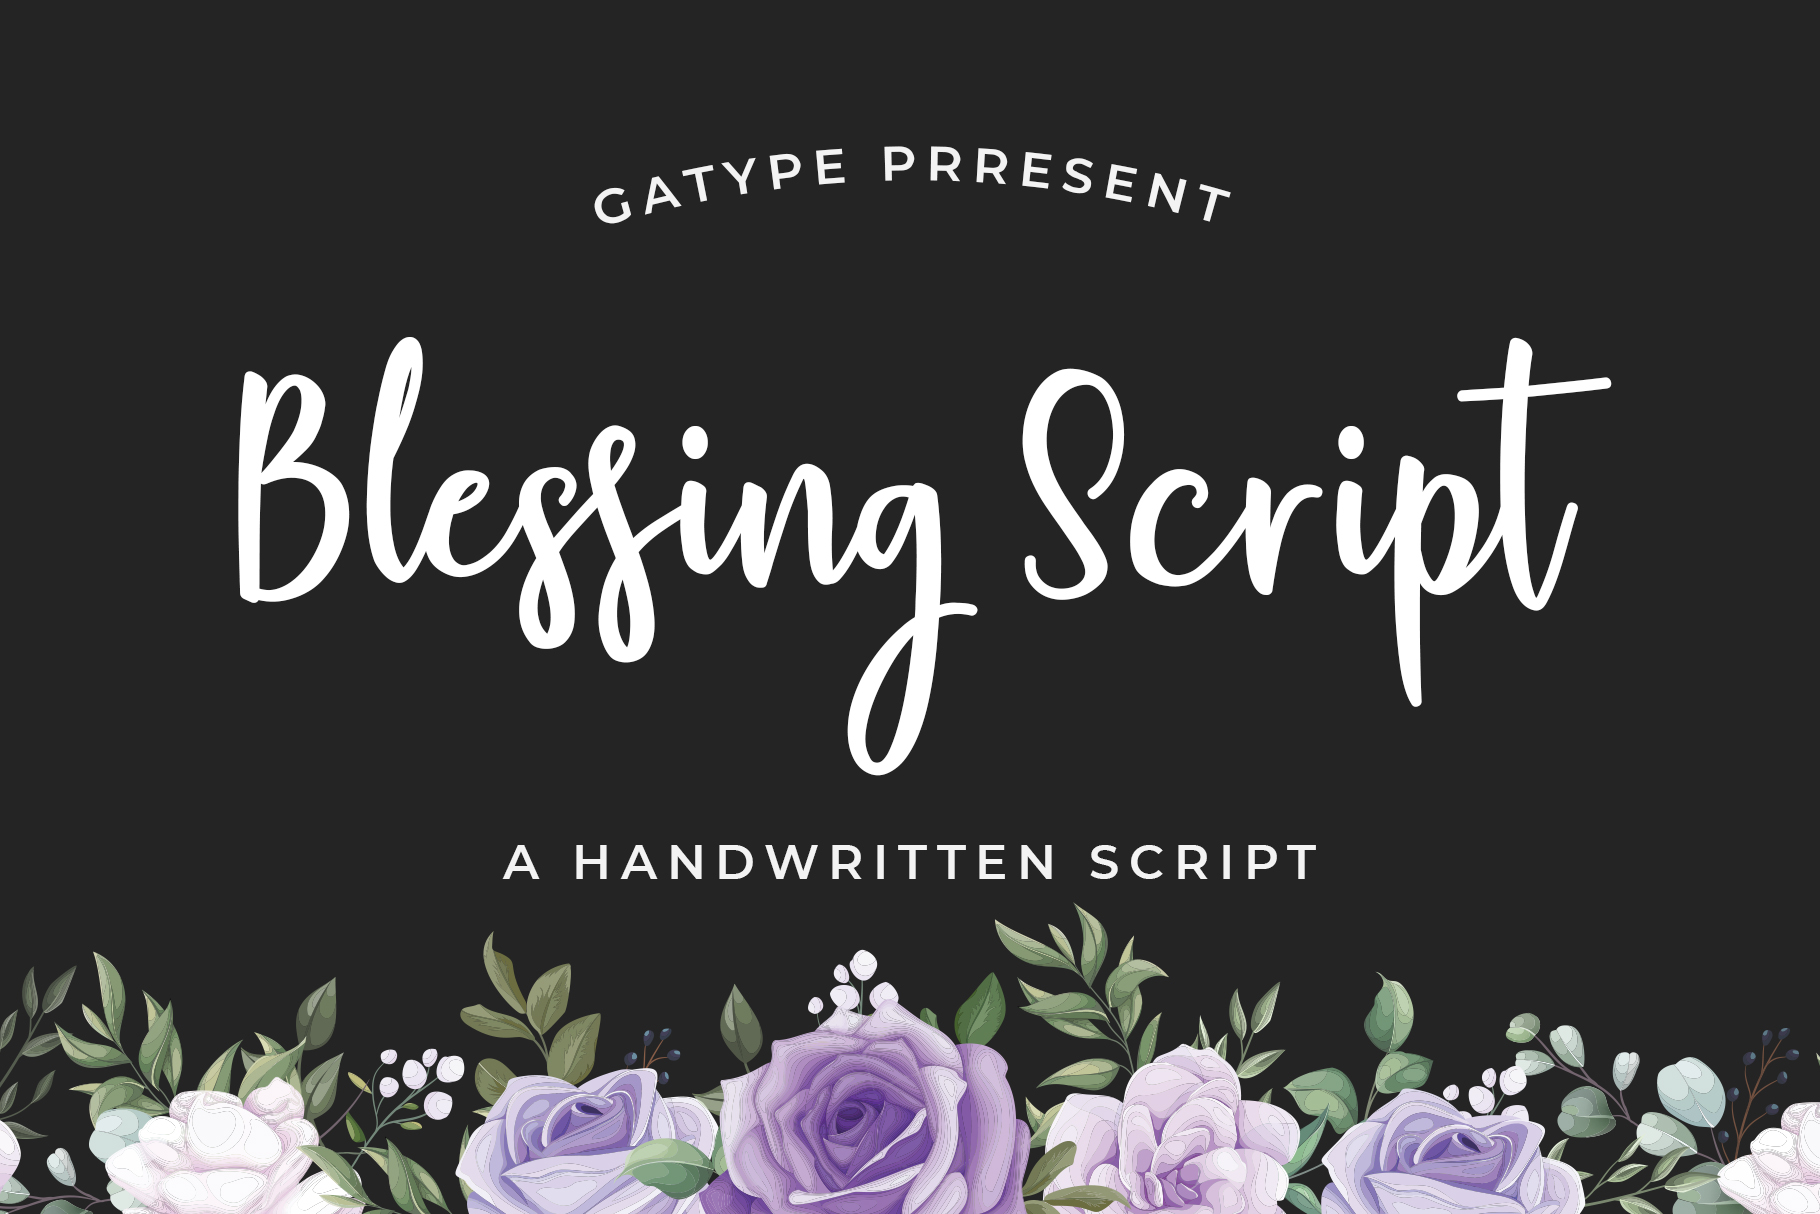 Blessing Script